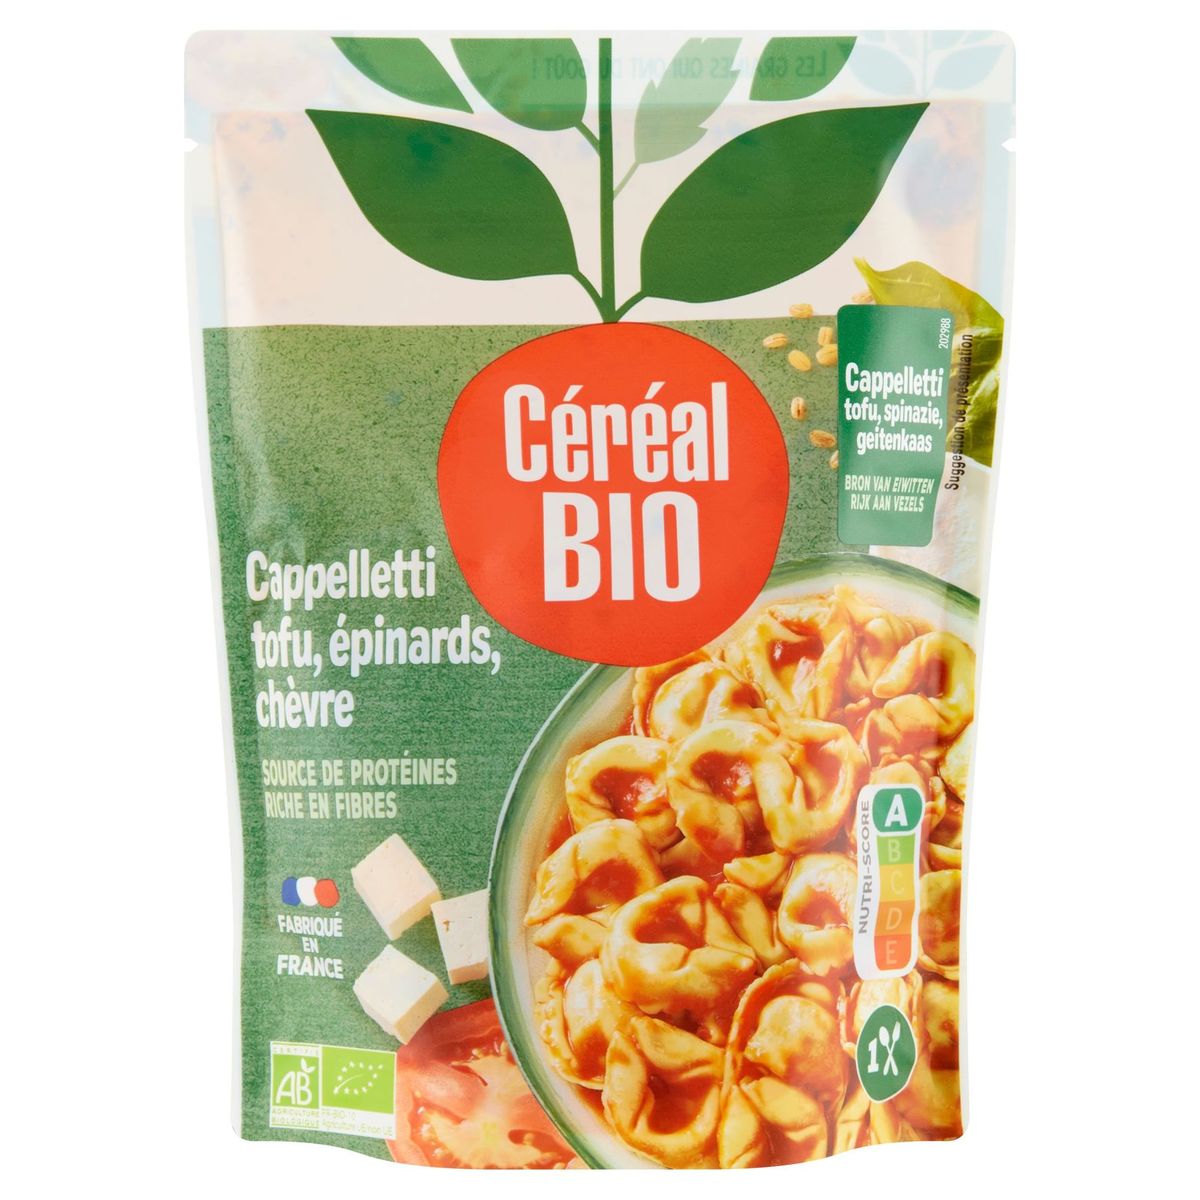 Céréal Bio Cappelletti Tofu, Épinards, Chèvre 220 g